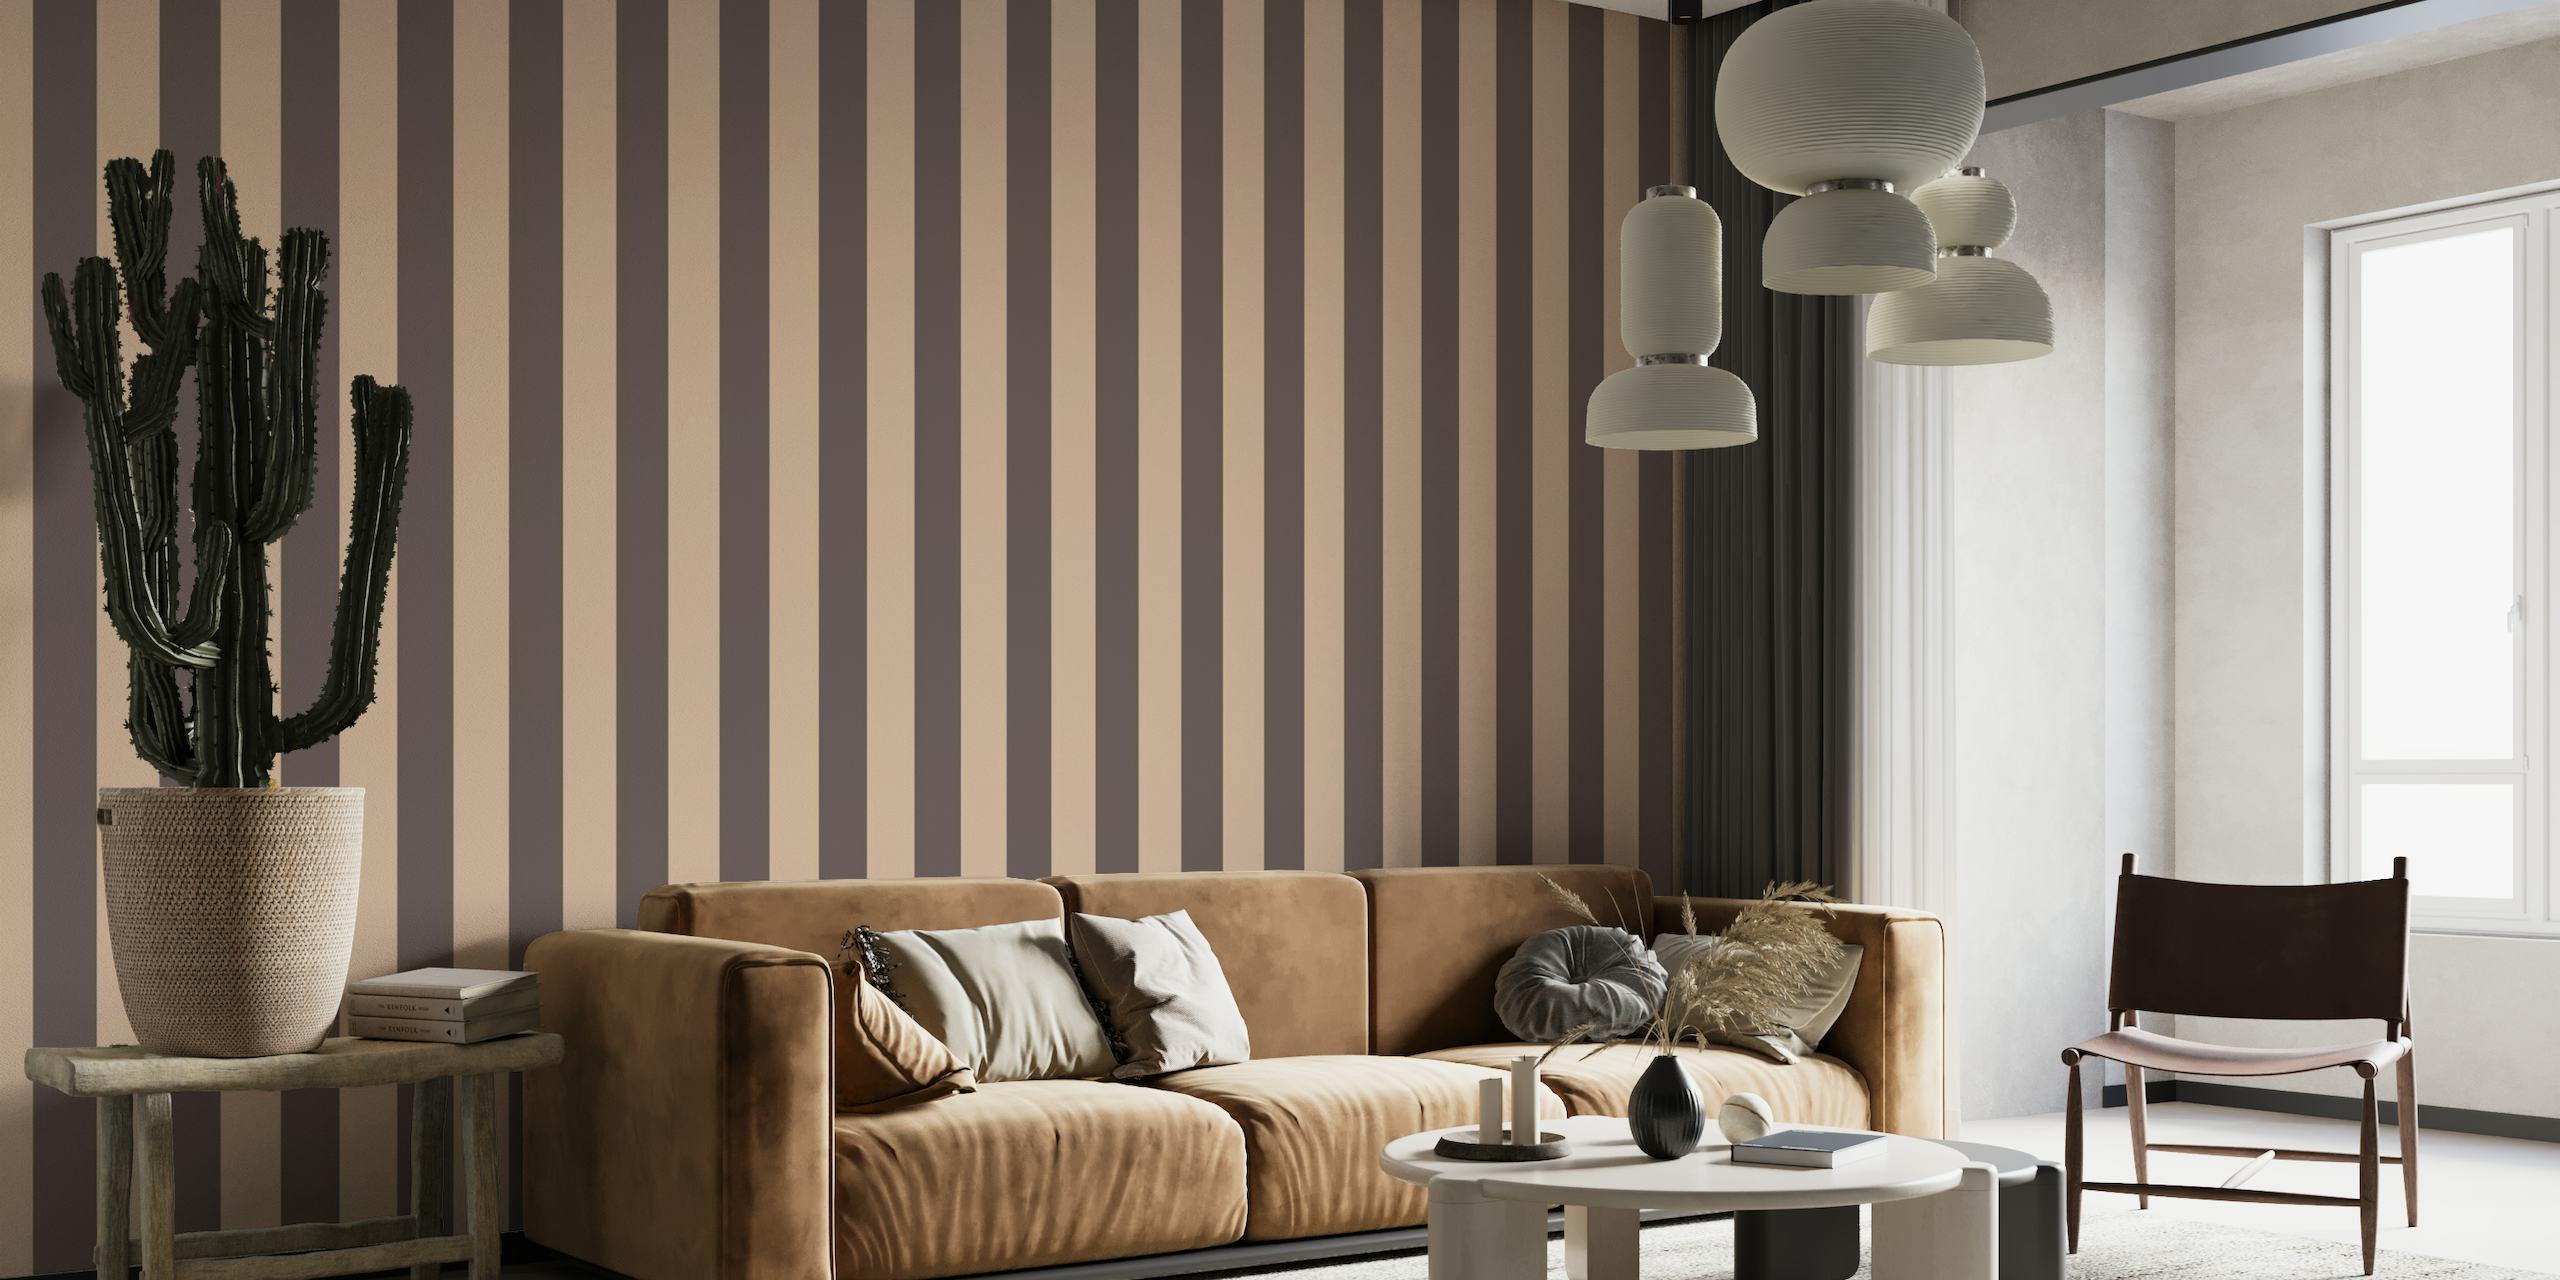 Mural de pared de rayas verticales marrones con varios tonos de marrón para decoración del hogar o comercial